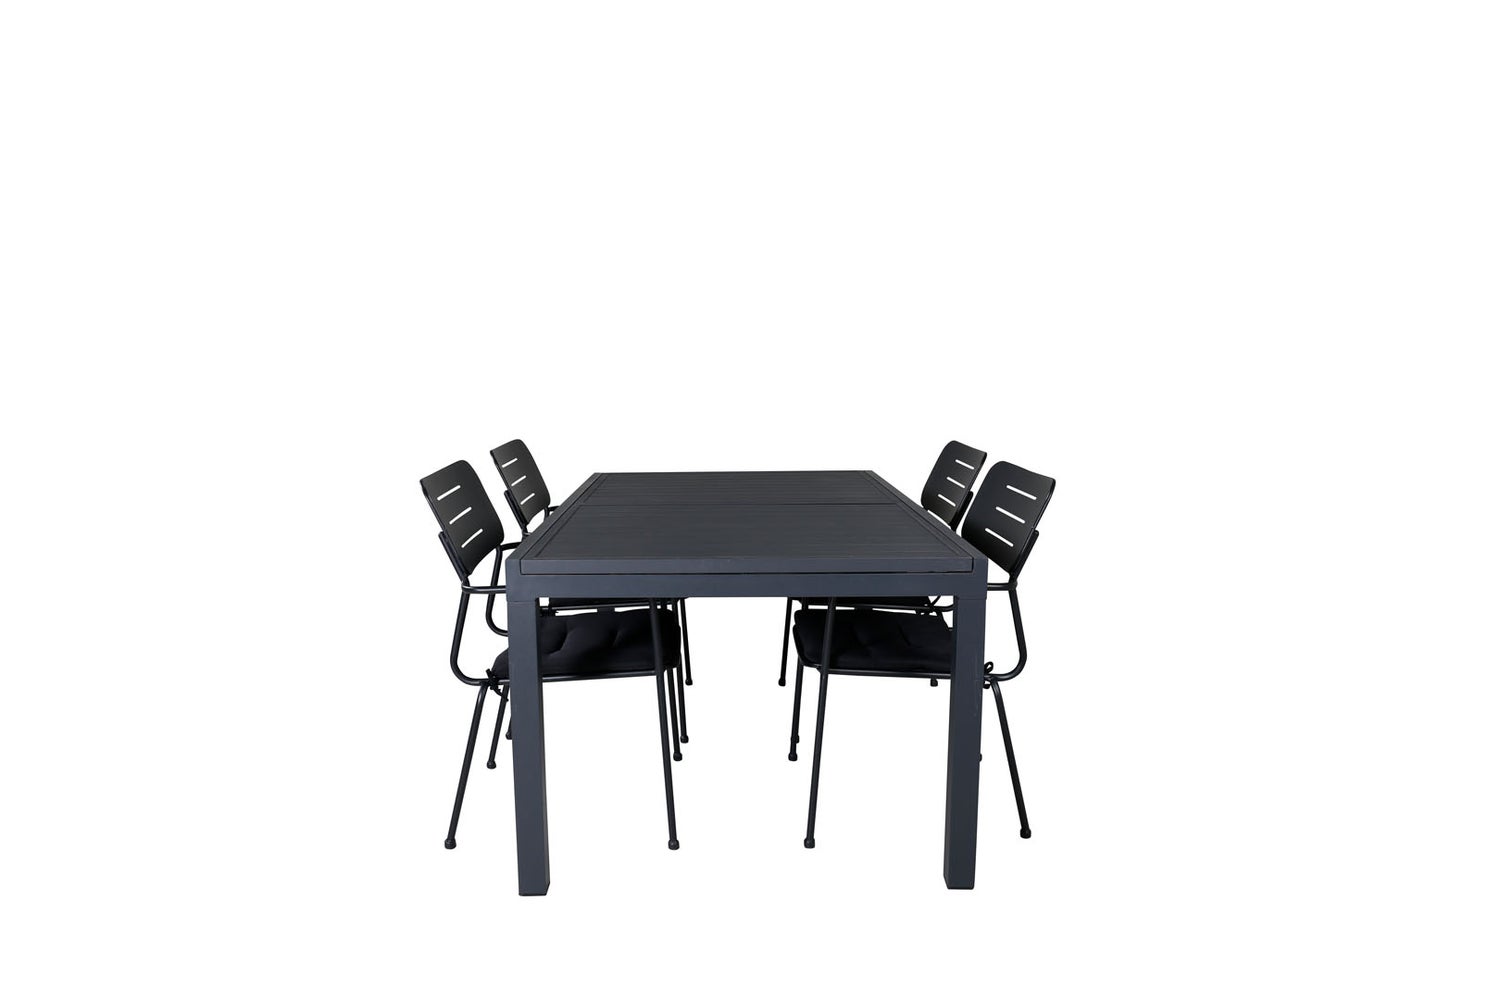 Marbella Gartenset Tisch 100x160/240cm und 4 Stühle Nicke schwarz.